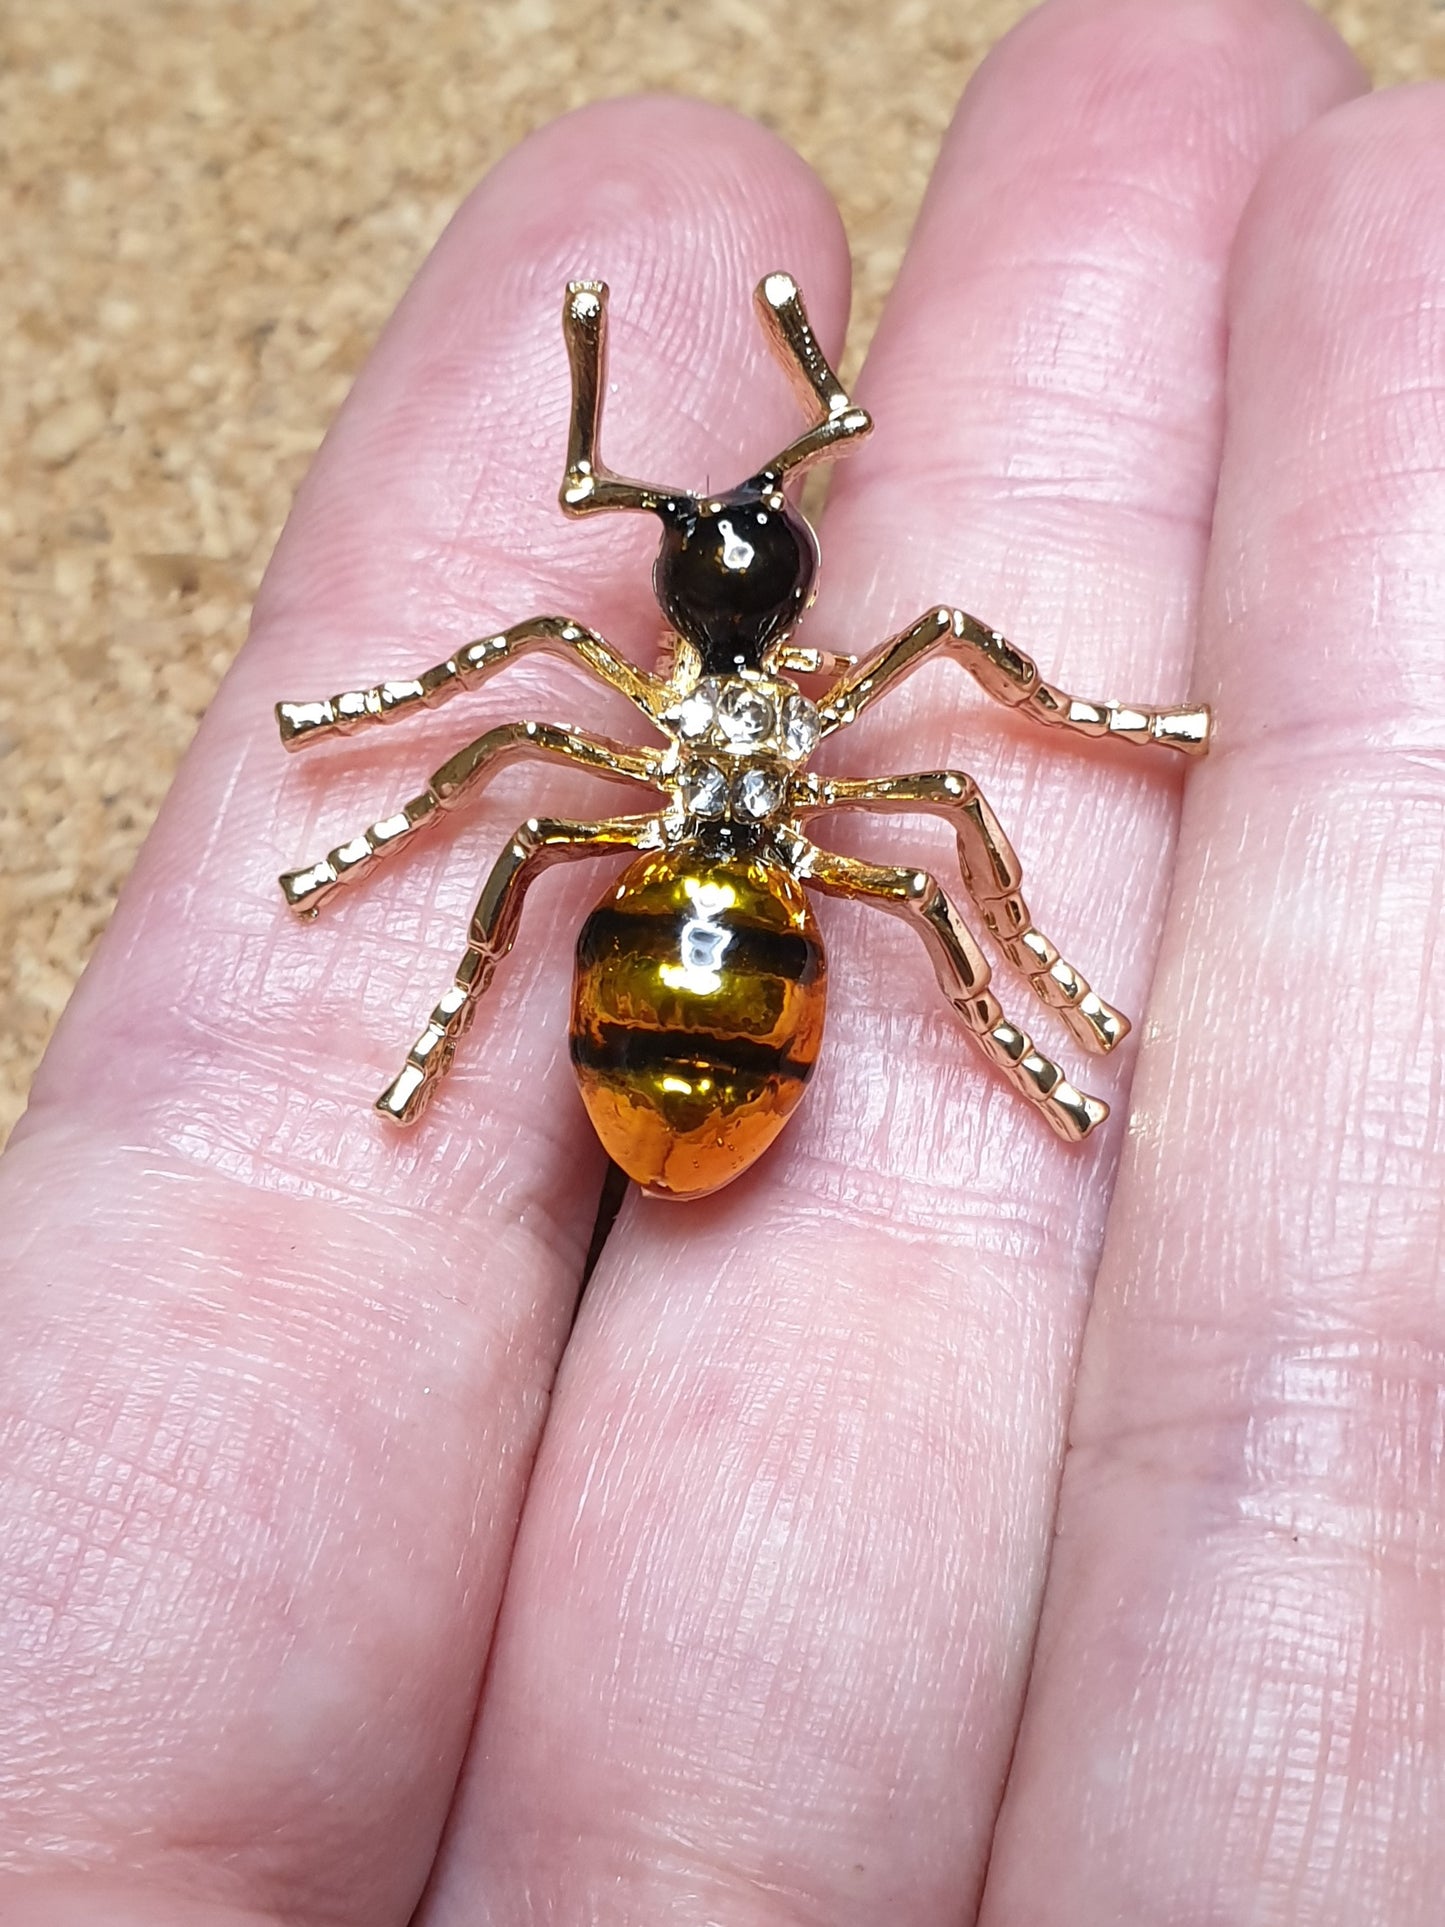 Honeypot Ant Brooch - Gold